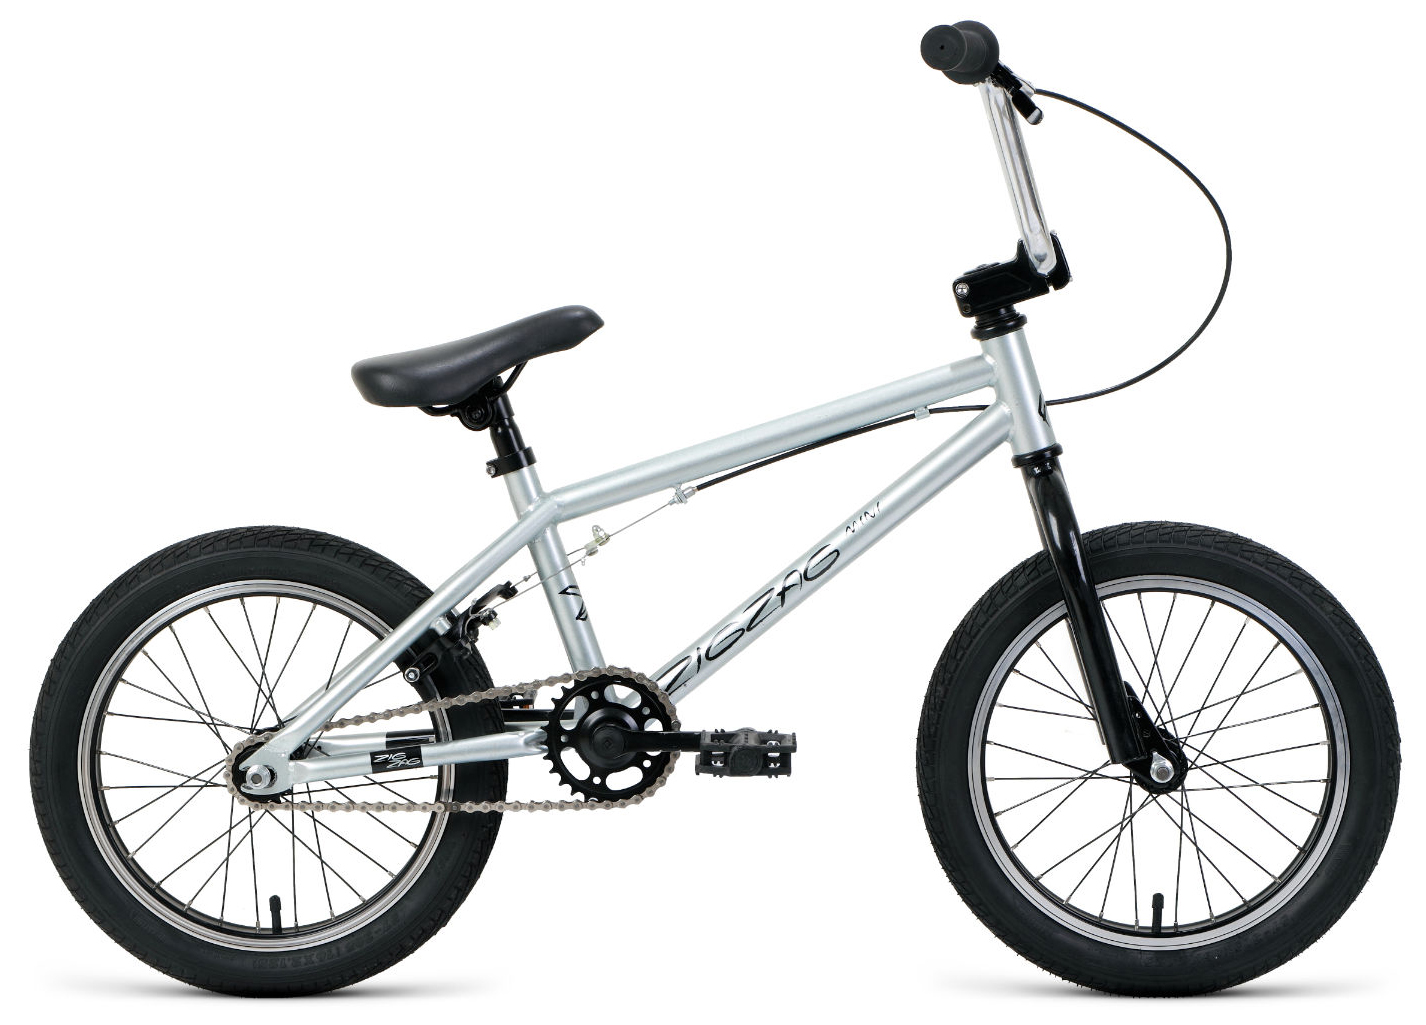  Отзывы о Велосипеде BMX Forward Zigzag 16 2021